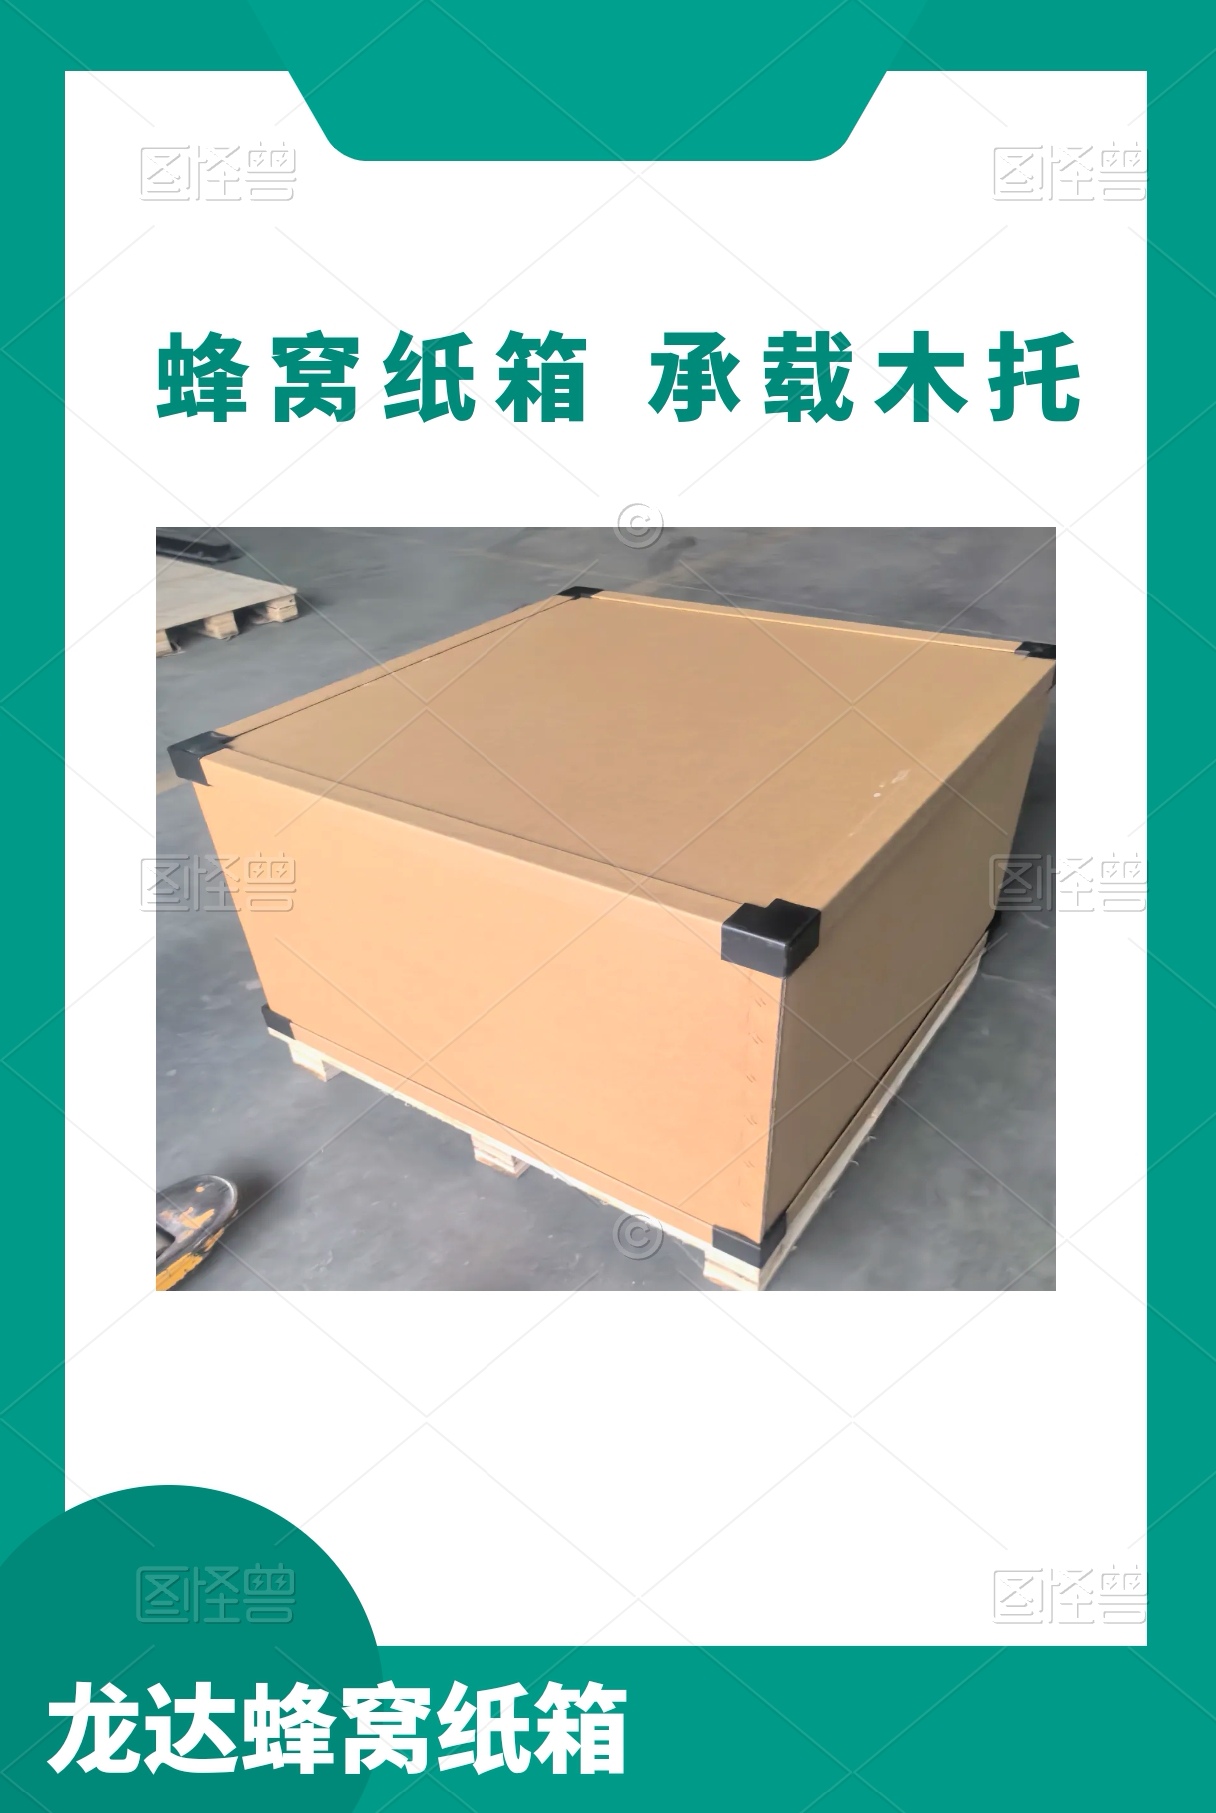 龙达重型纸箱 医疗床包装箱 蜂窝纸板 定制各种规格